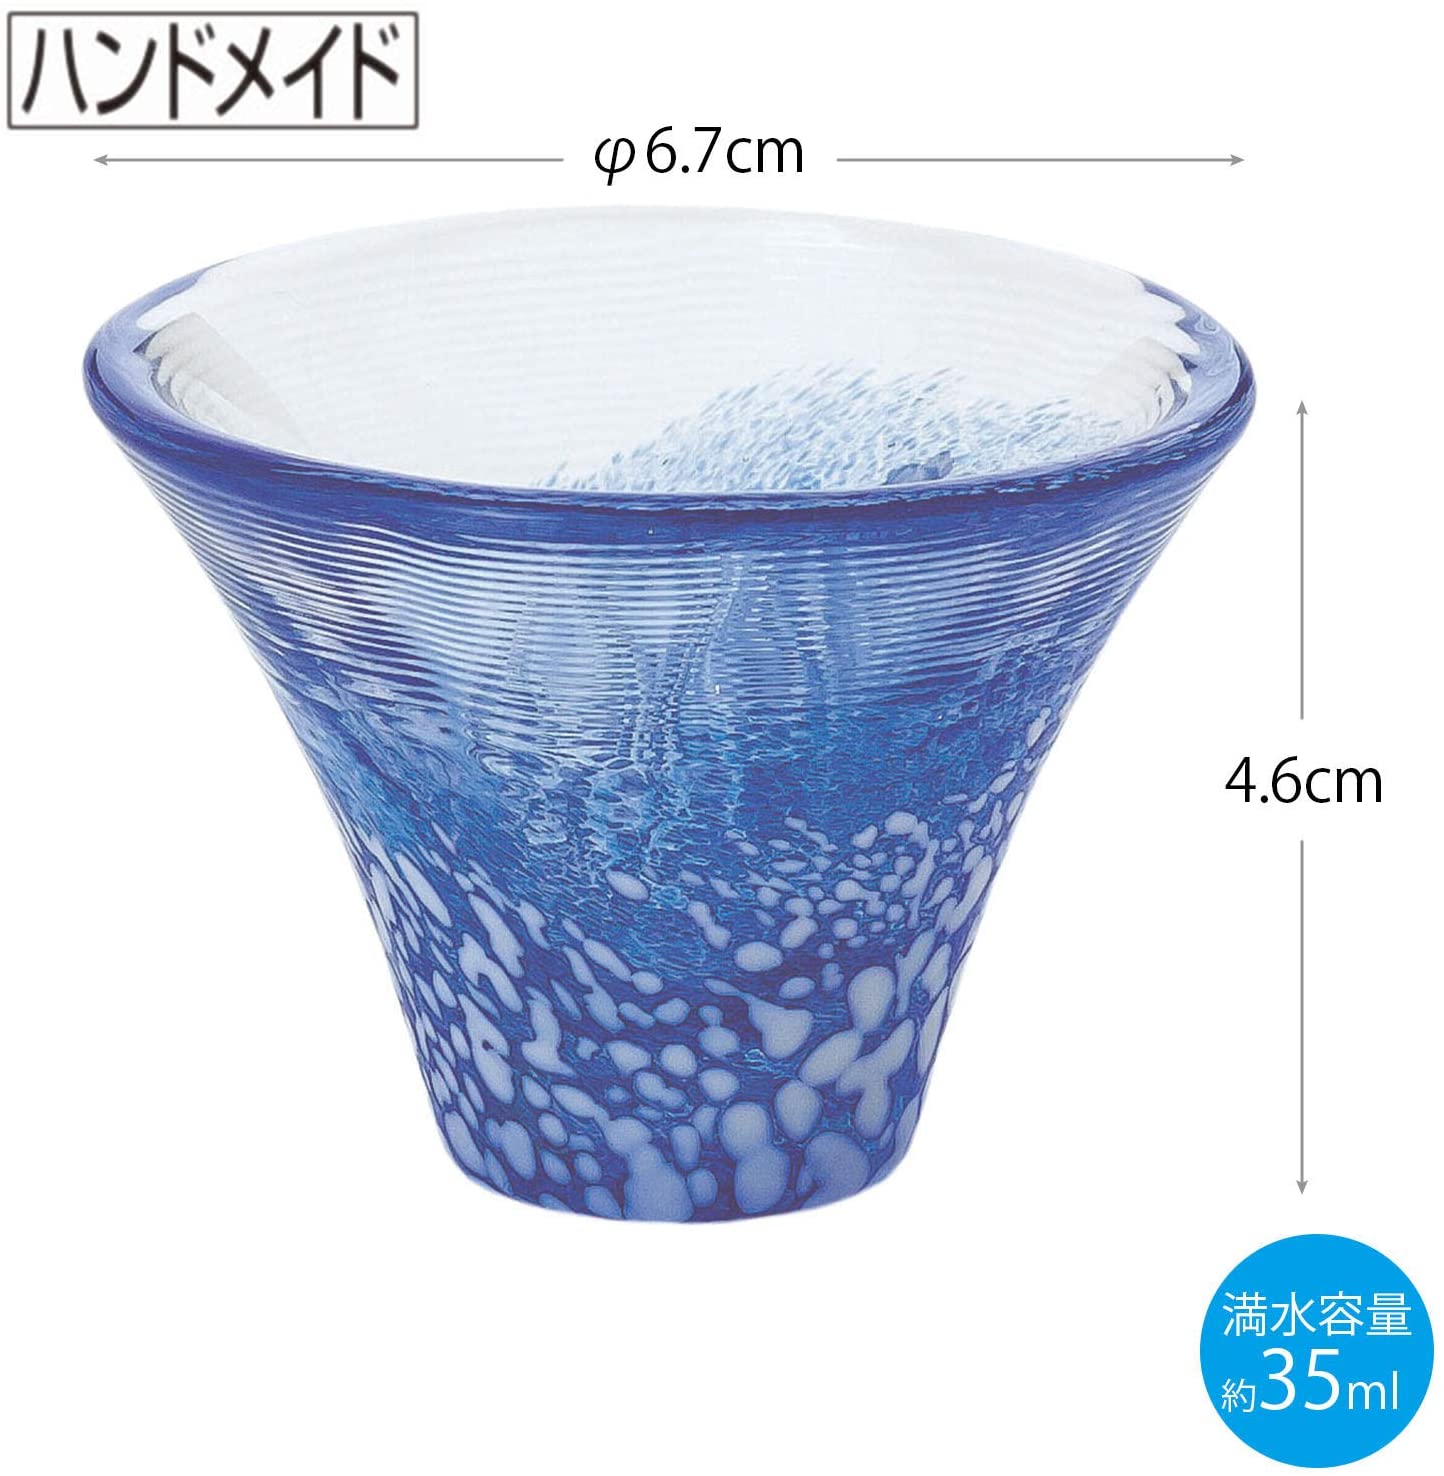 預訂｜東洋佐佐木 - Toyo-Sasaki Glass 富士山招福杯 清酒冷酒玻璃杯 G635-T72 (一套2隻 35ml)｜《約10-14個工作天內寄出》